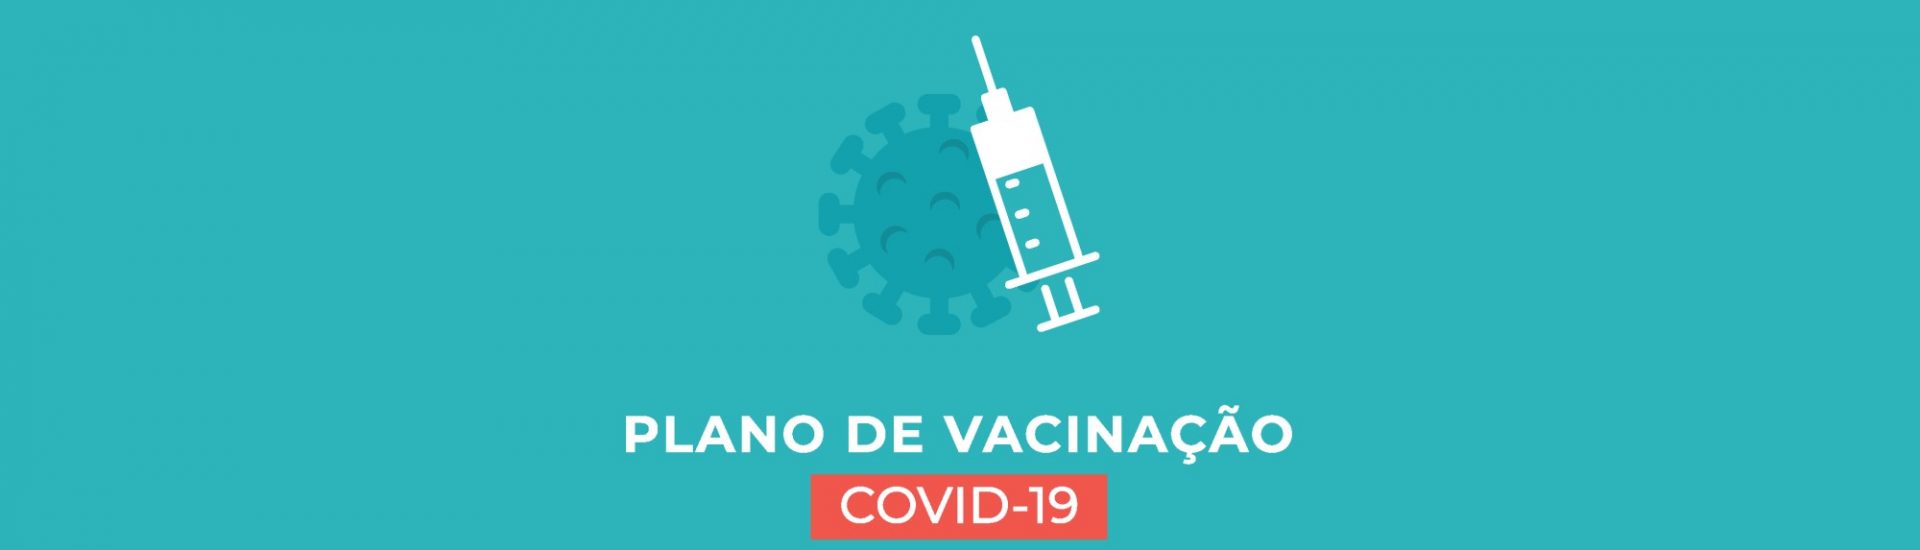 Atualização: Condições de acesso dos fisioterapeutas à vacinação para a COVID-19